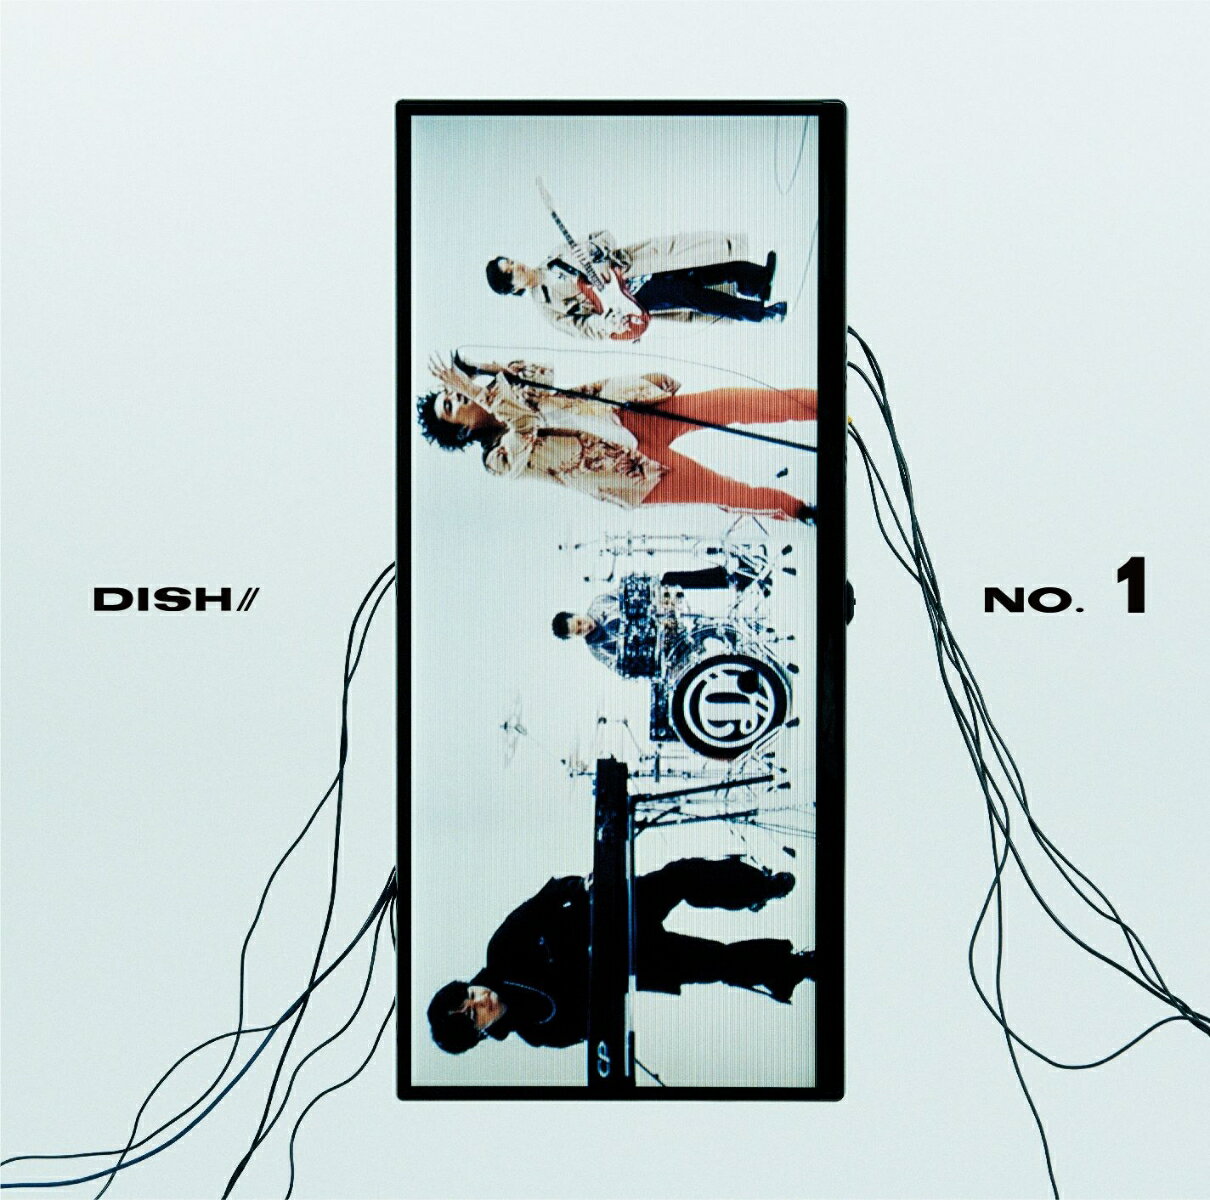 No.1 DISH//